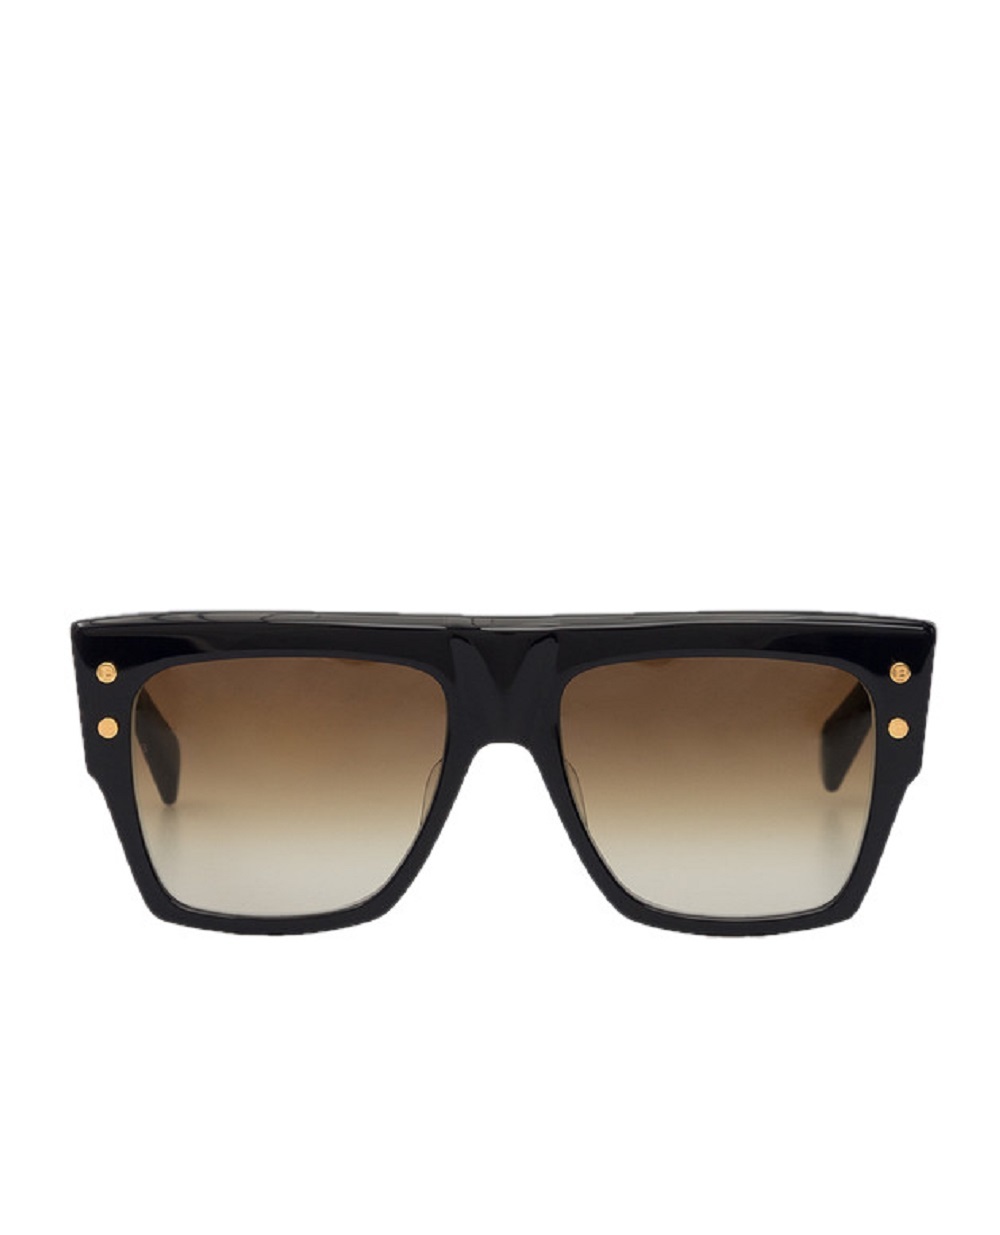 Солнцезащитные очки Balmain BPS-100E-56, коричневый цвет • Купить в интернет-магазине Kameron